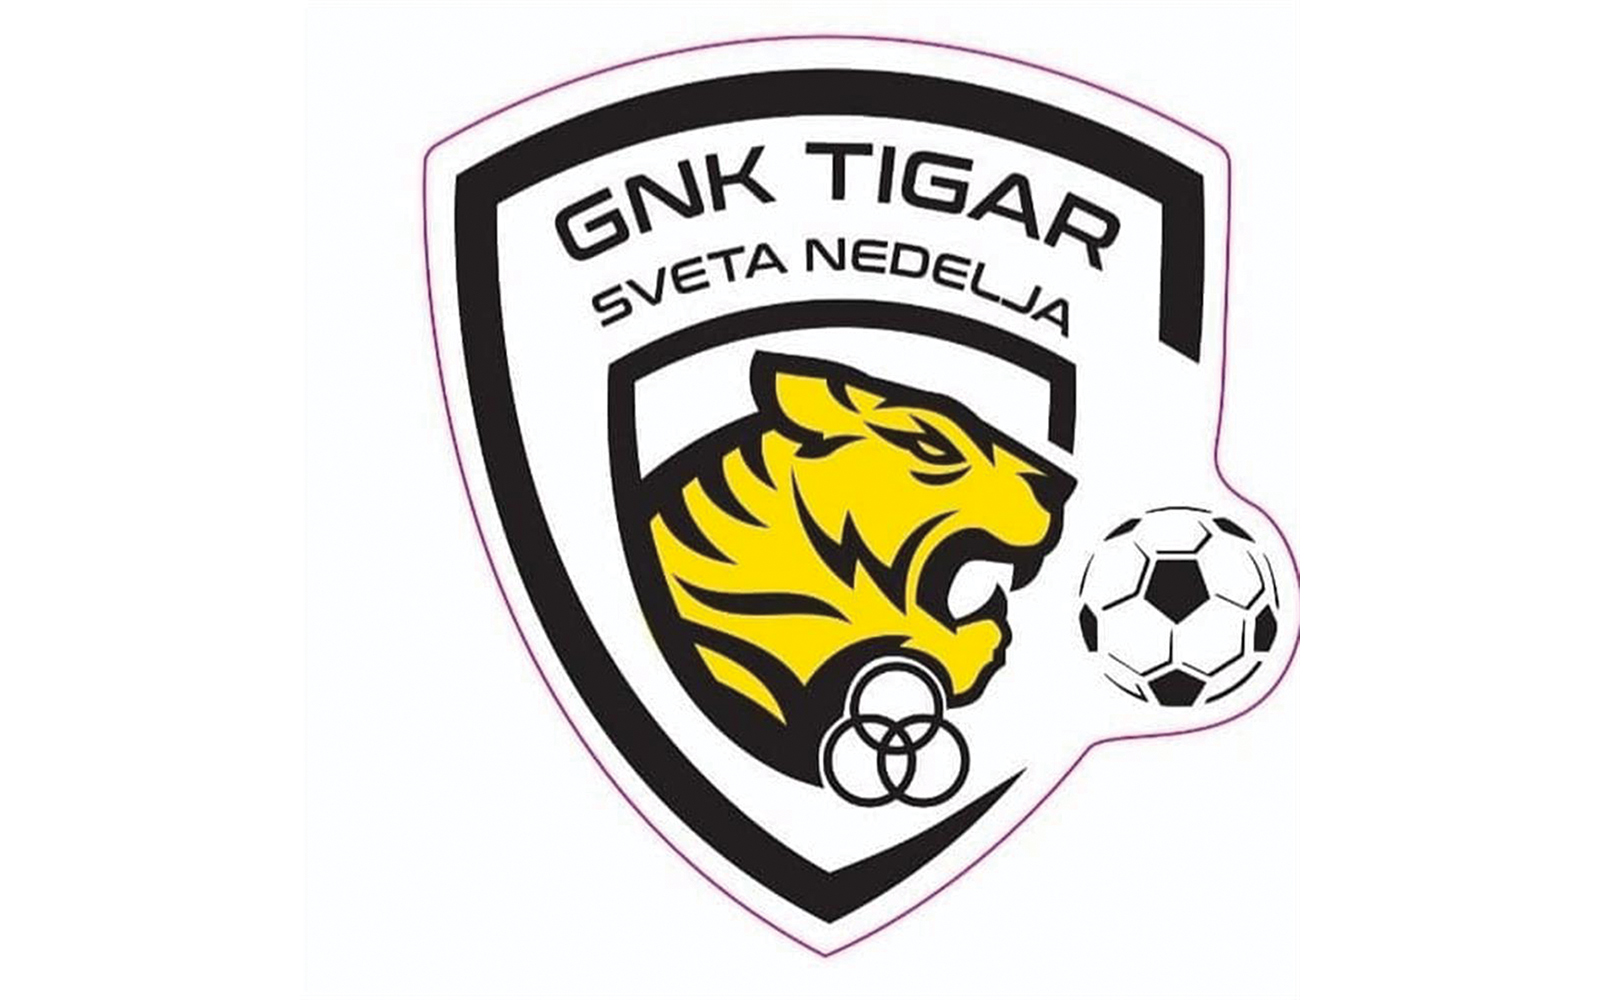 4. nogometna liga sredite Zagreb  B - 6. kolo
GNK Tigar Sveta Nedjelja  Banovac 1:1 (1:1)